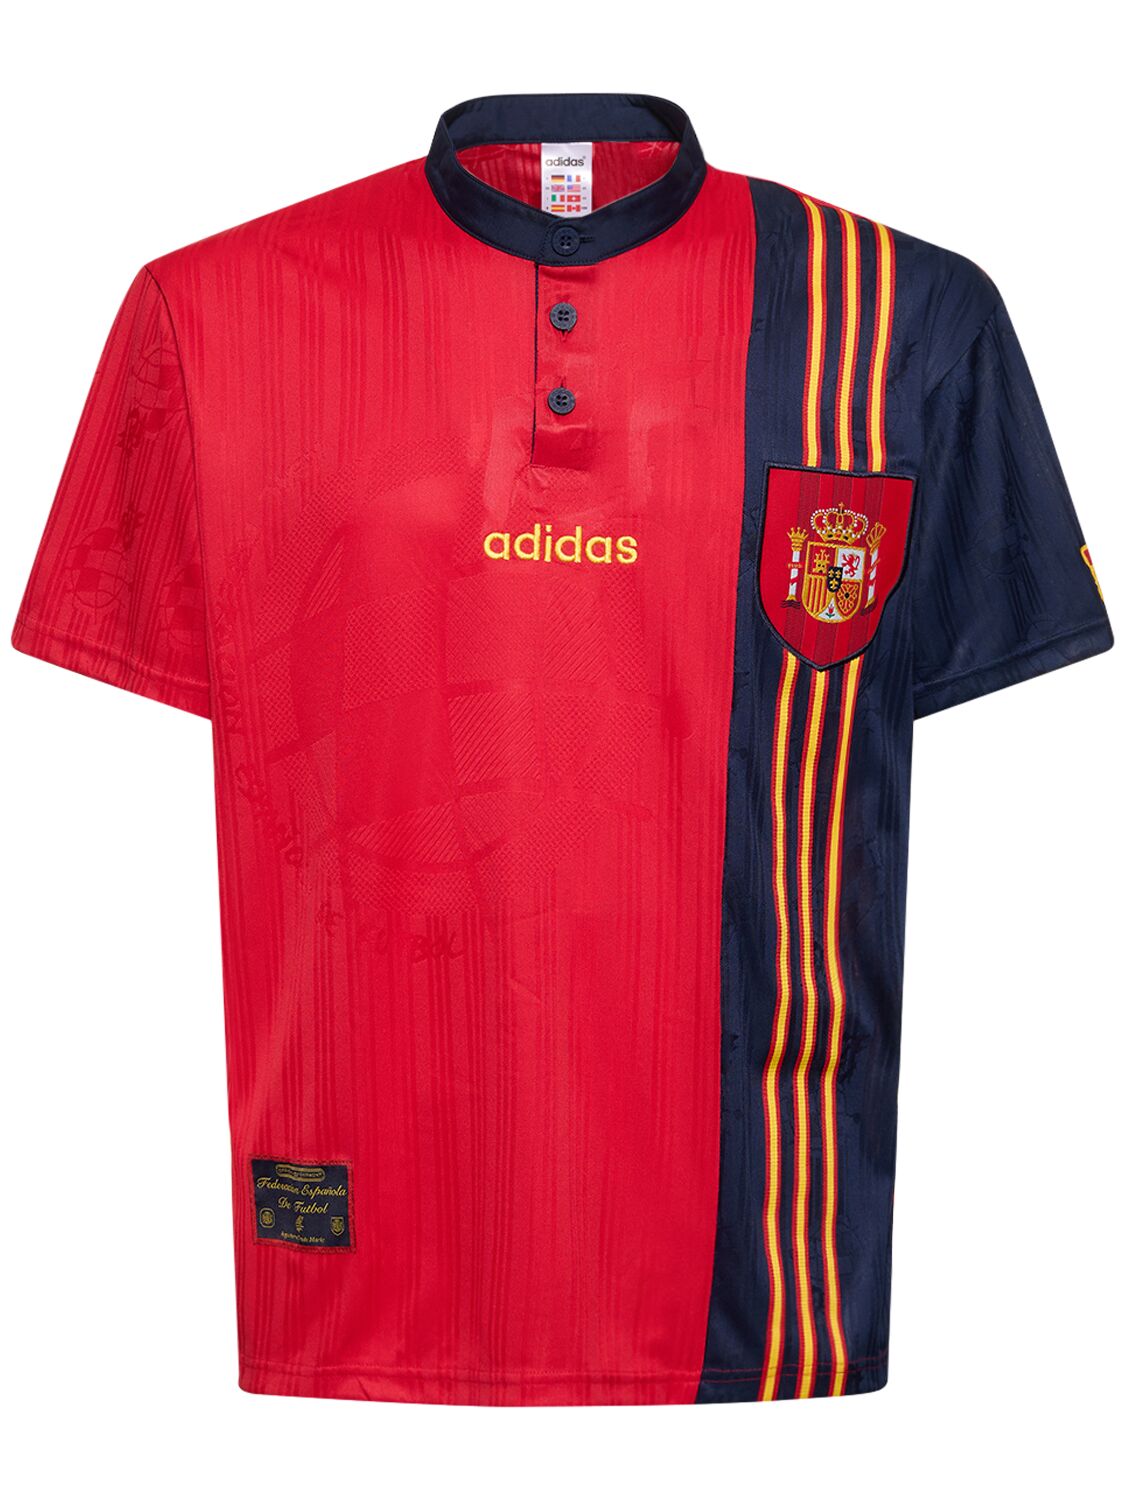 Spain 96 Jersey